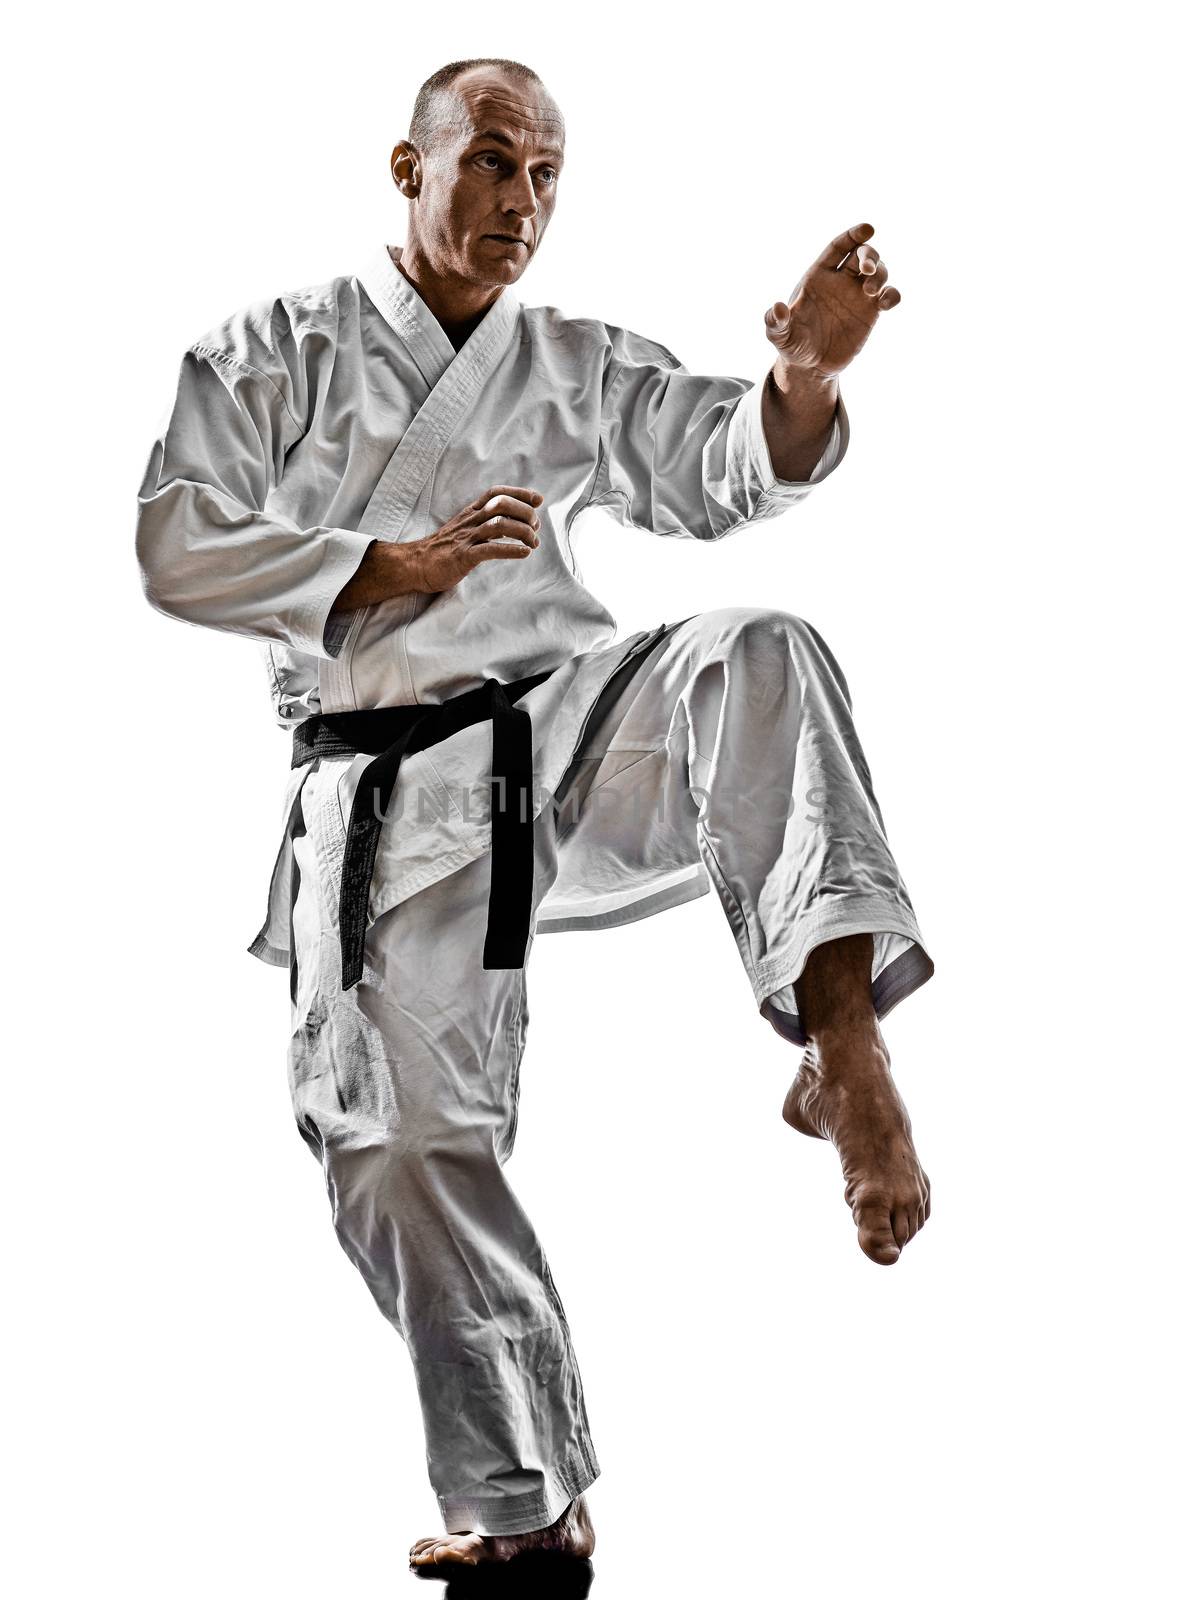 one karate katana training man isolated on white background